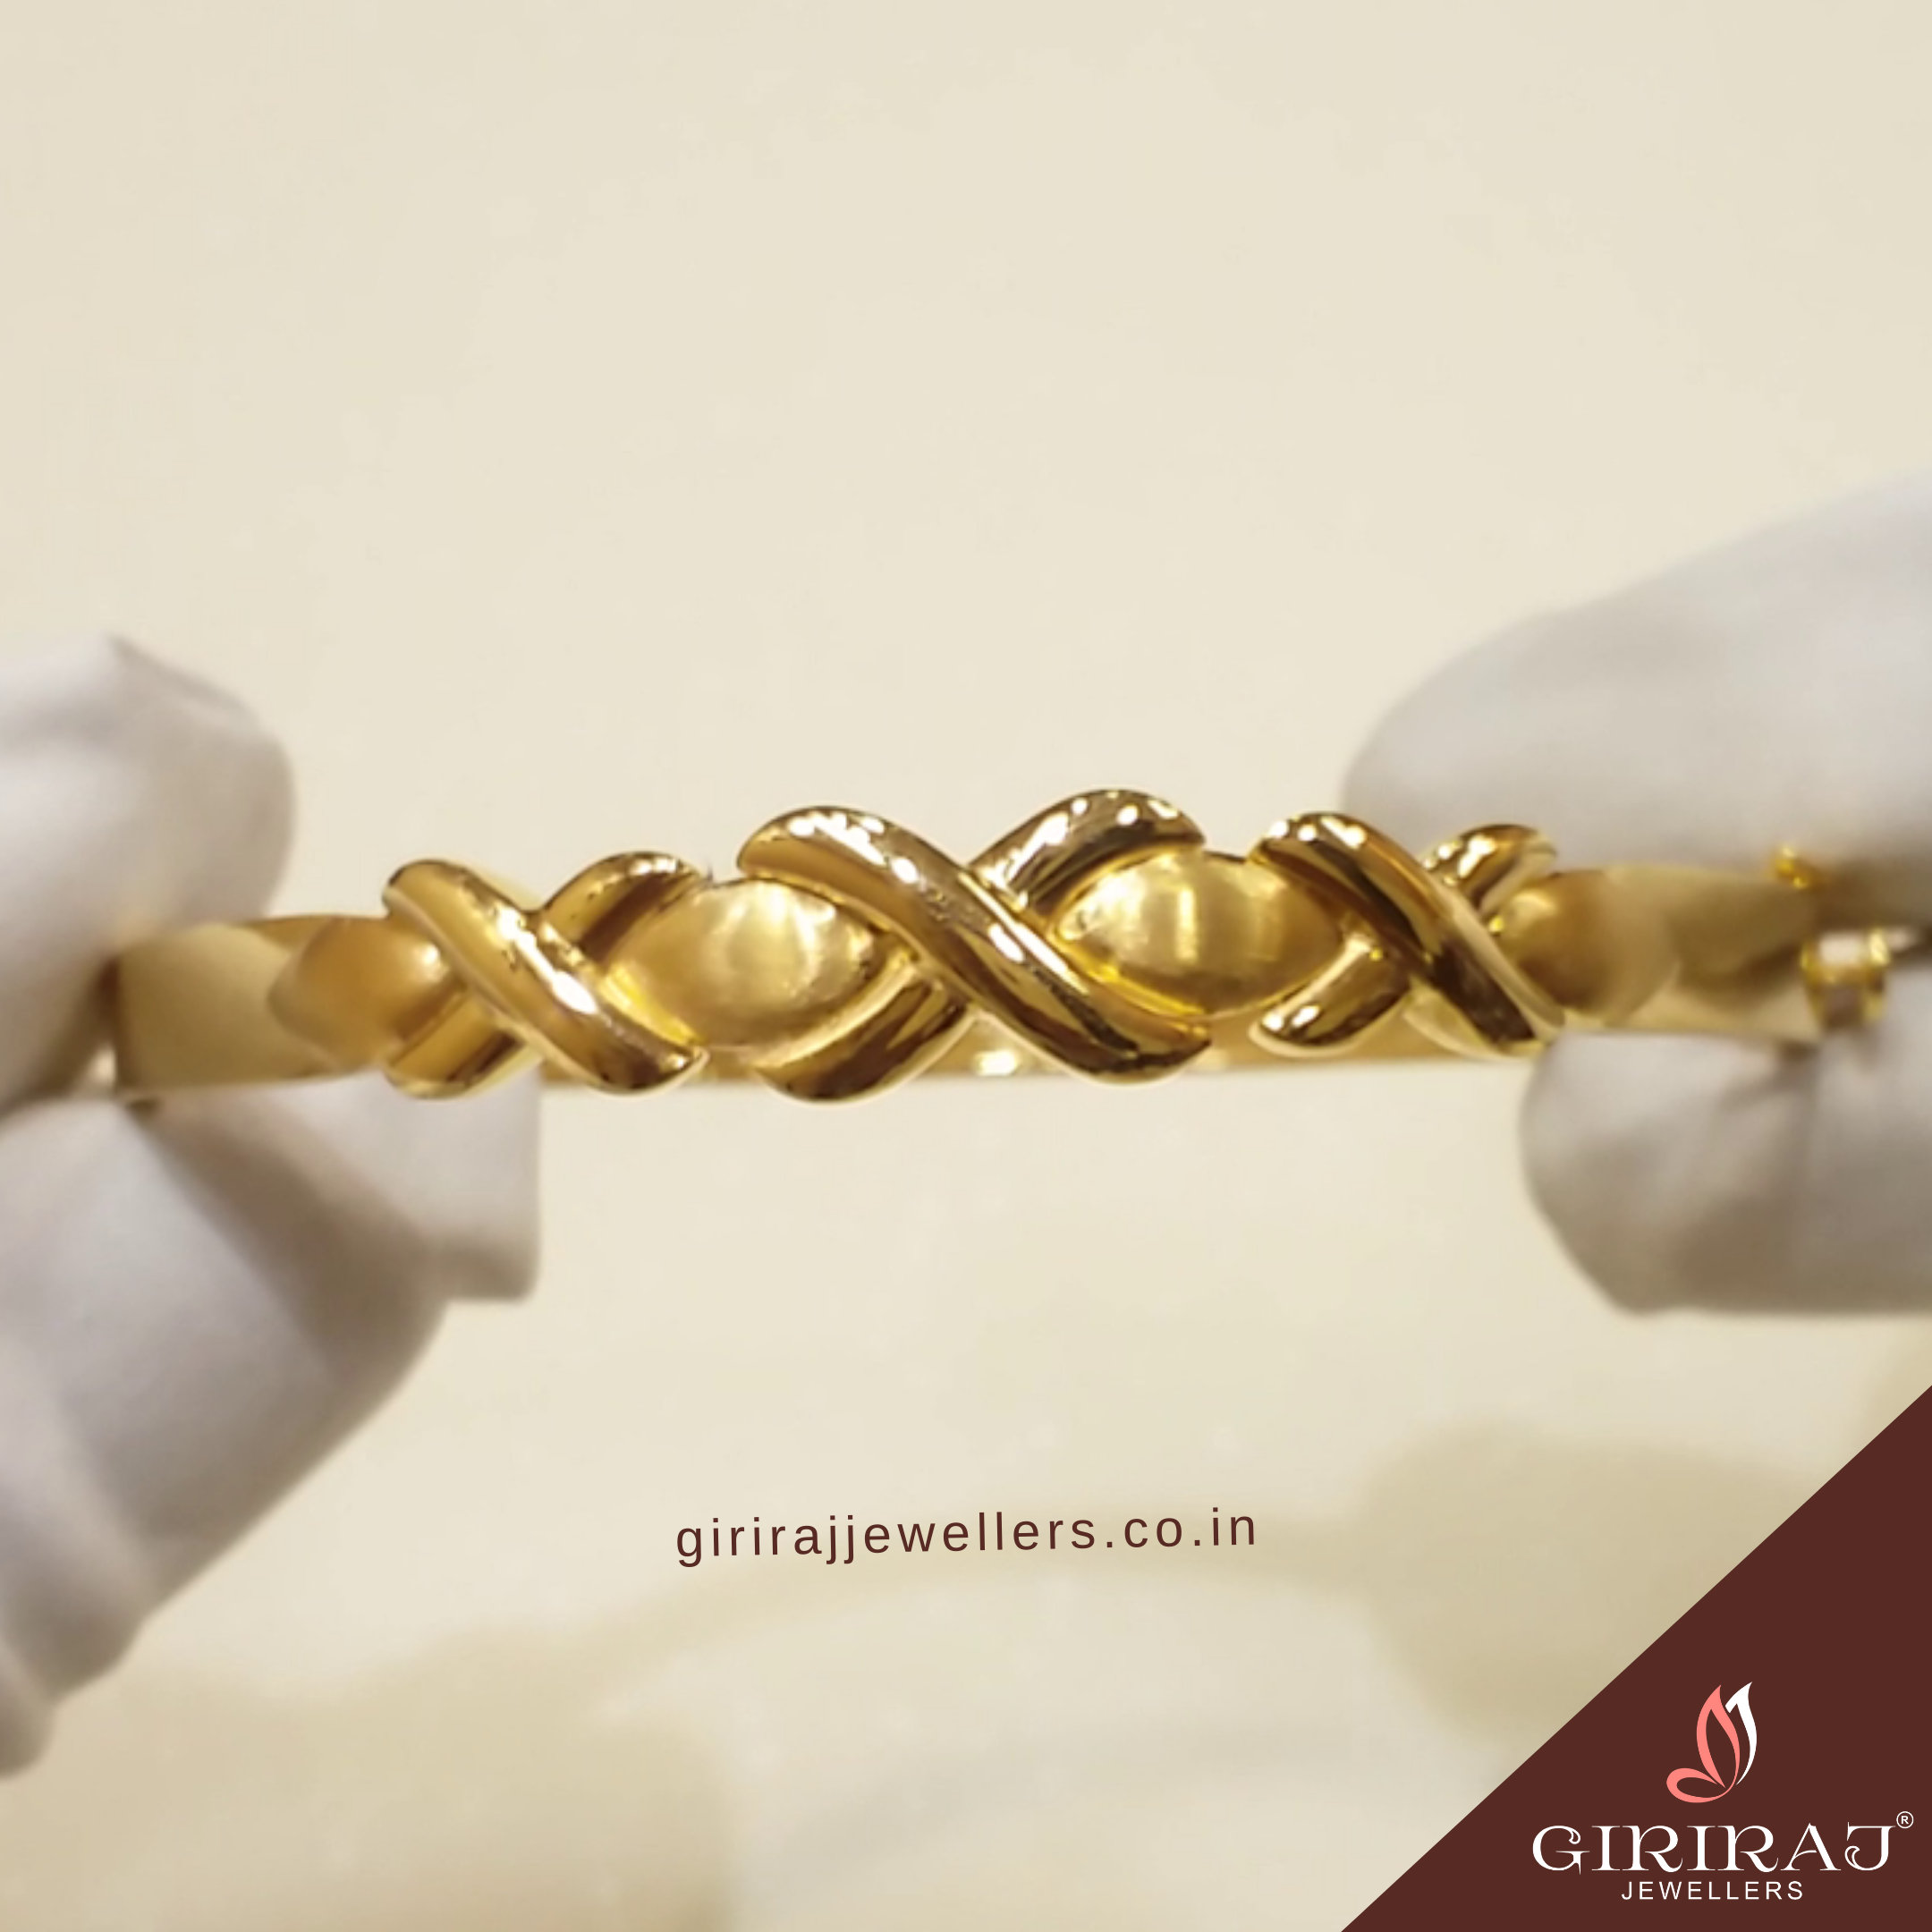 Discover 92+ tanishq gold bracelet online - POPPY